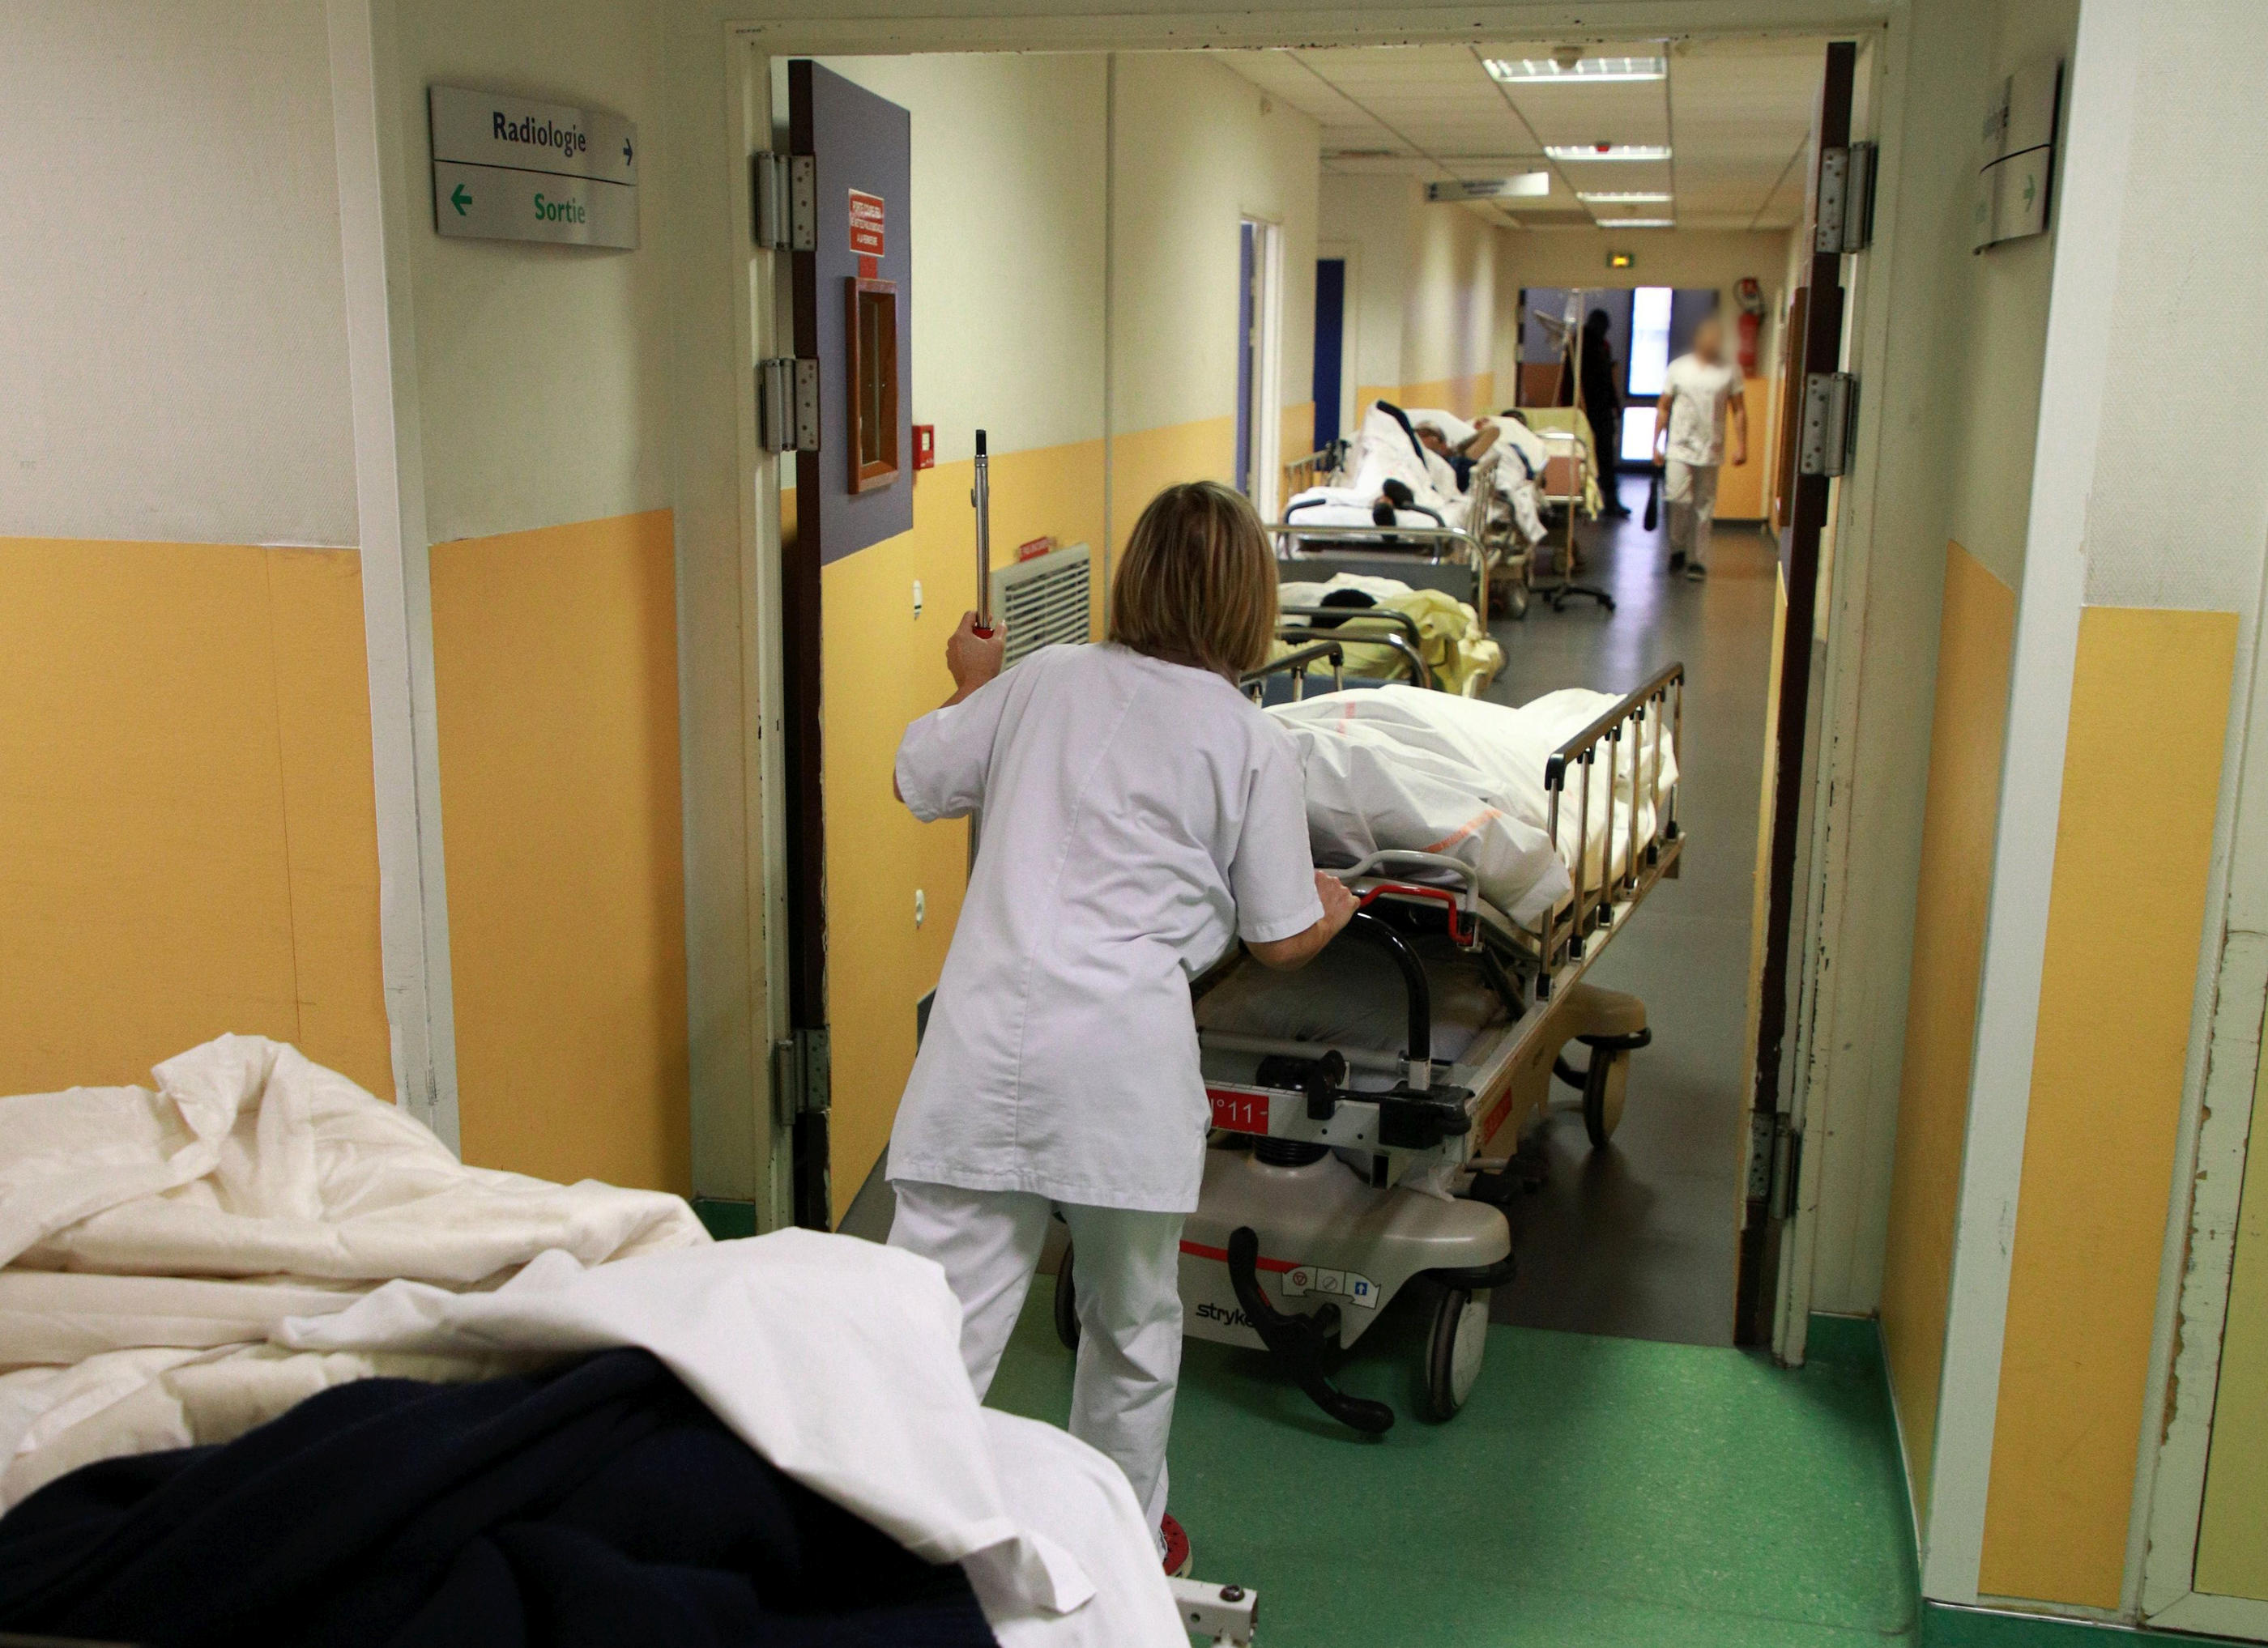 Hôpital d'Argenteuil (archives). Un homme de 44 ans a été surpris en train de sortir de la chambre d'une patiente de 93 ans atteinte de troubles psychologiques. LP/Olivier Arandel